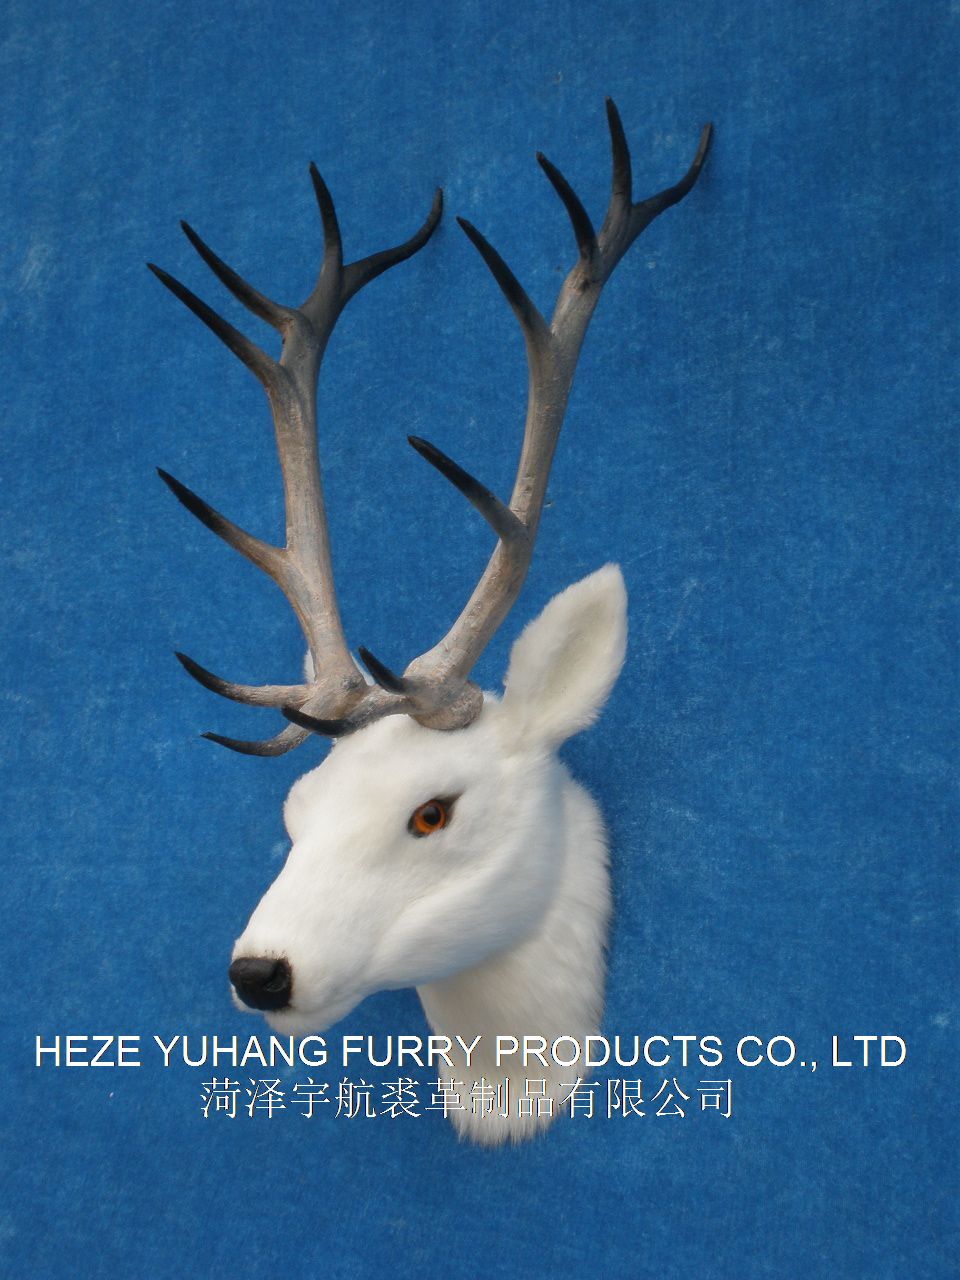 FHM529,菏泽宇航裘革制品有限公司专业仿真皮毛动物生产厂家